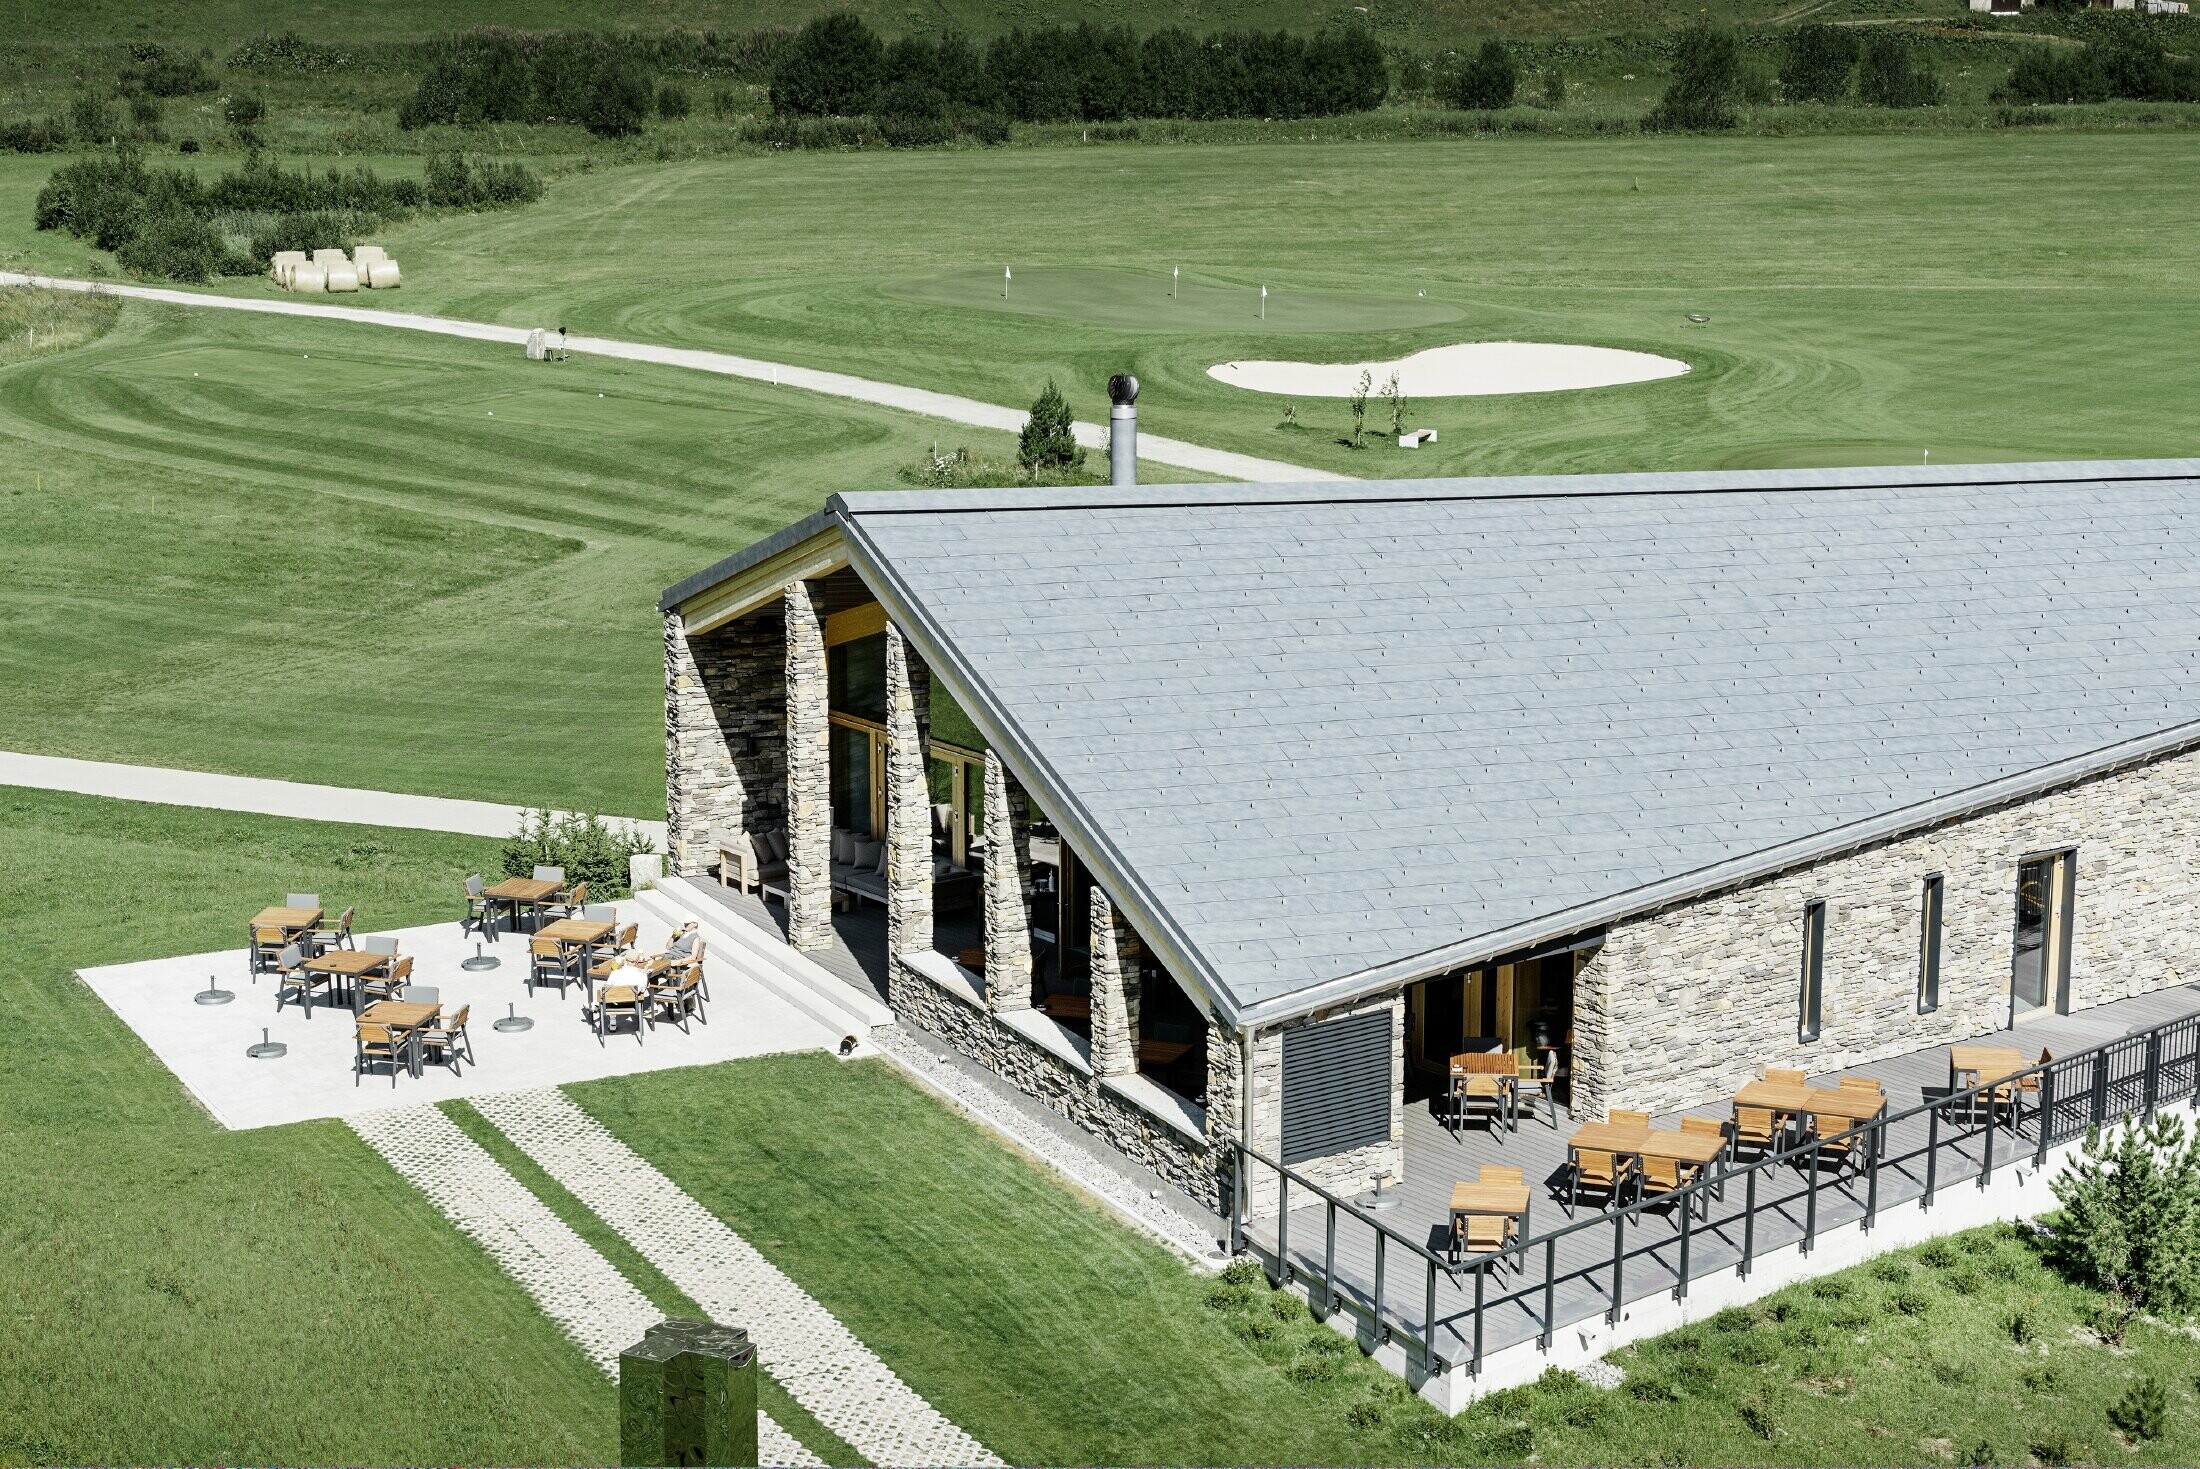 Club-house moderne du parcours de golf d’Andermatt en Suisse — Façade en pierre et panneaux de toiture FX.12 PREFA en aluminium de couleur gris pierre